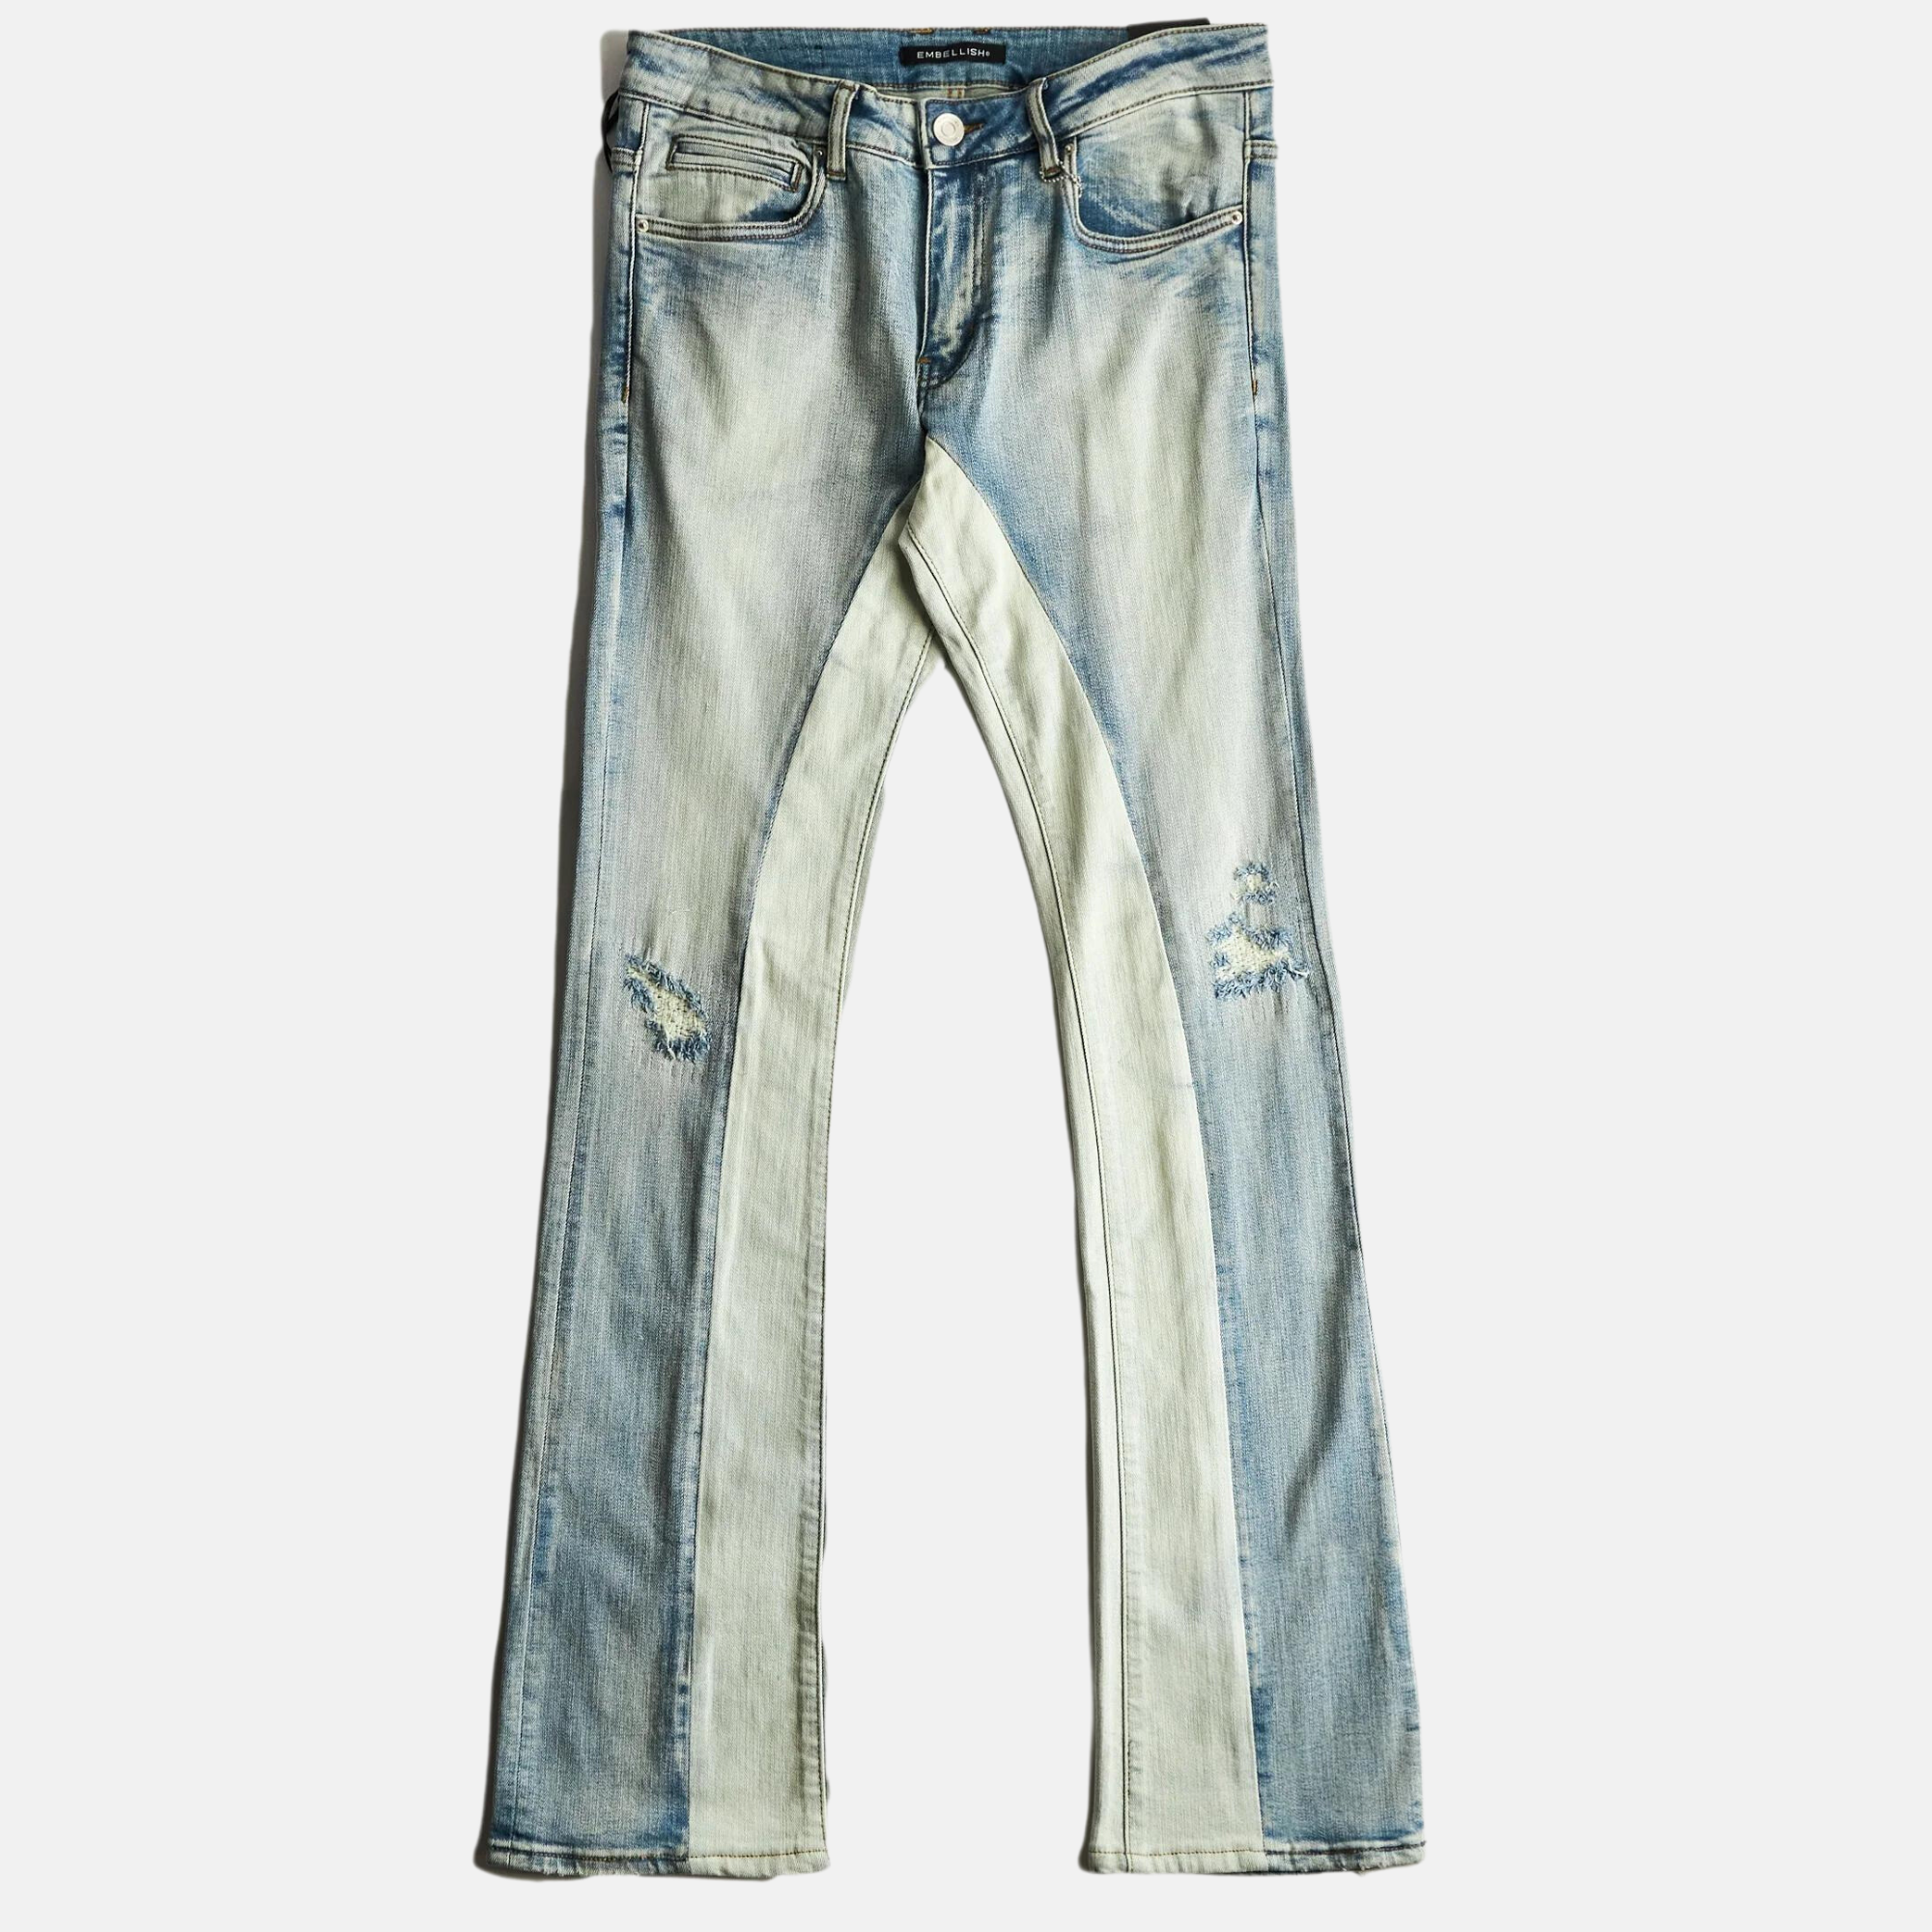 Embellish Kaulitz Light Stone Jeans